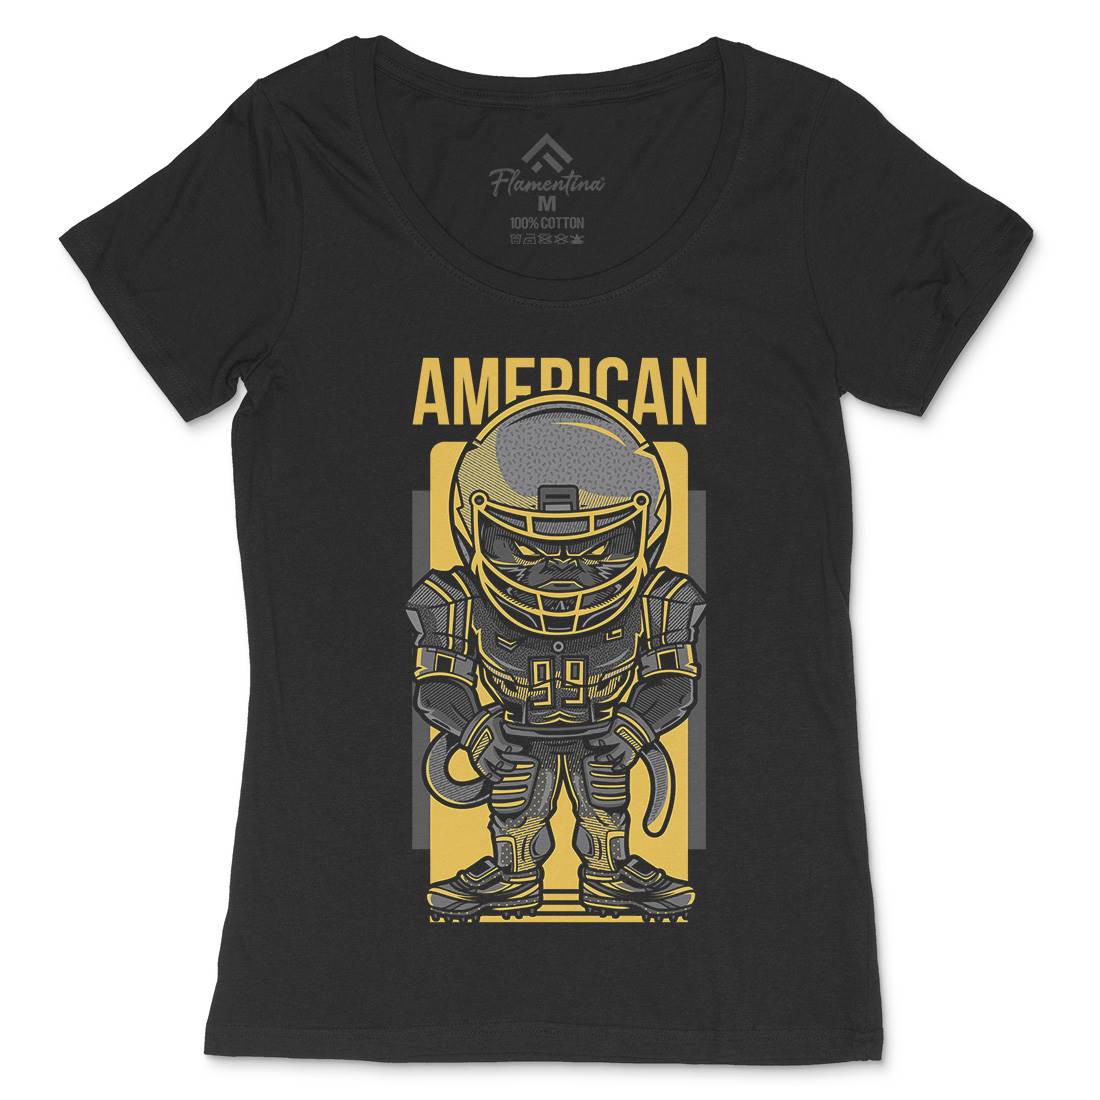 American Football Womens Scoop Neck T-Shirt Sport D704